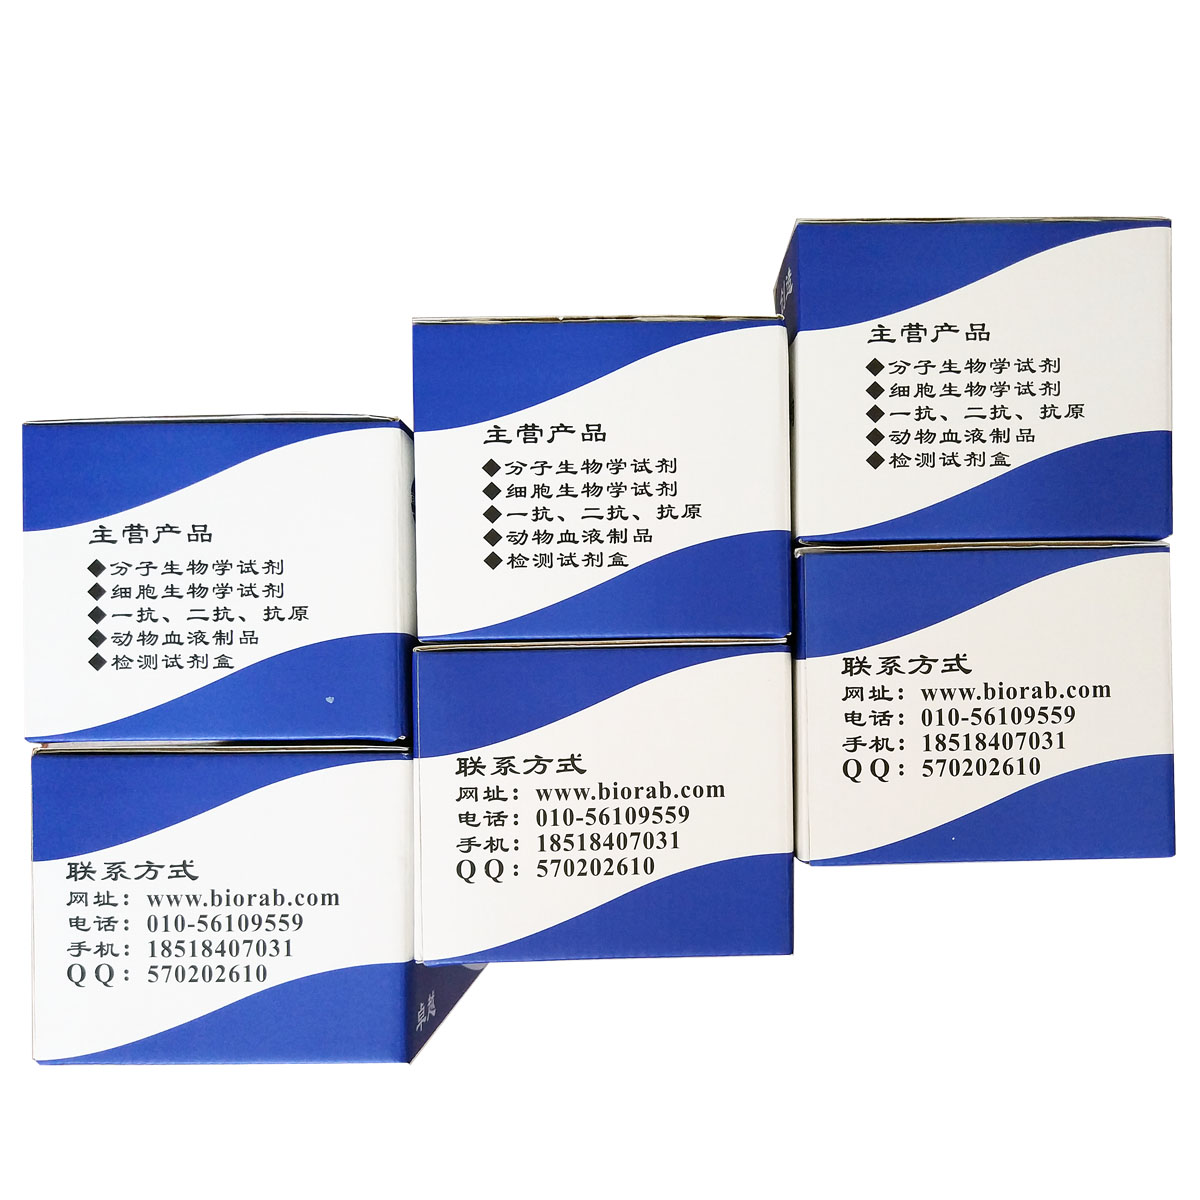 Tunel细胞凋亡检测试剂盒（POD）北京品牌